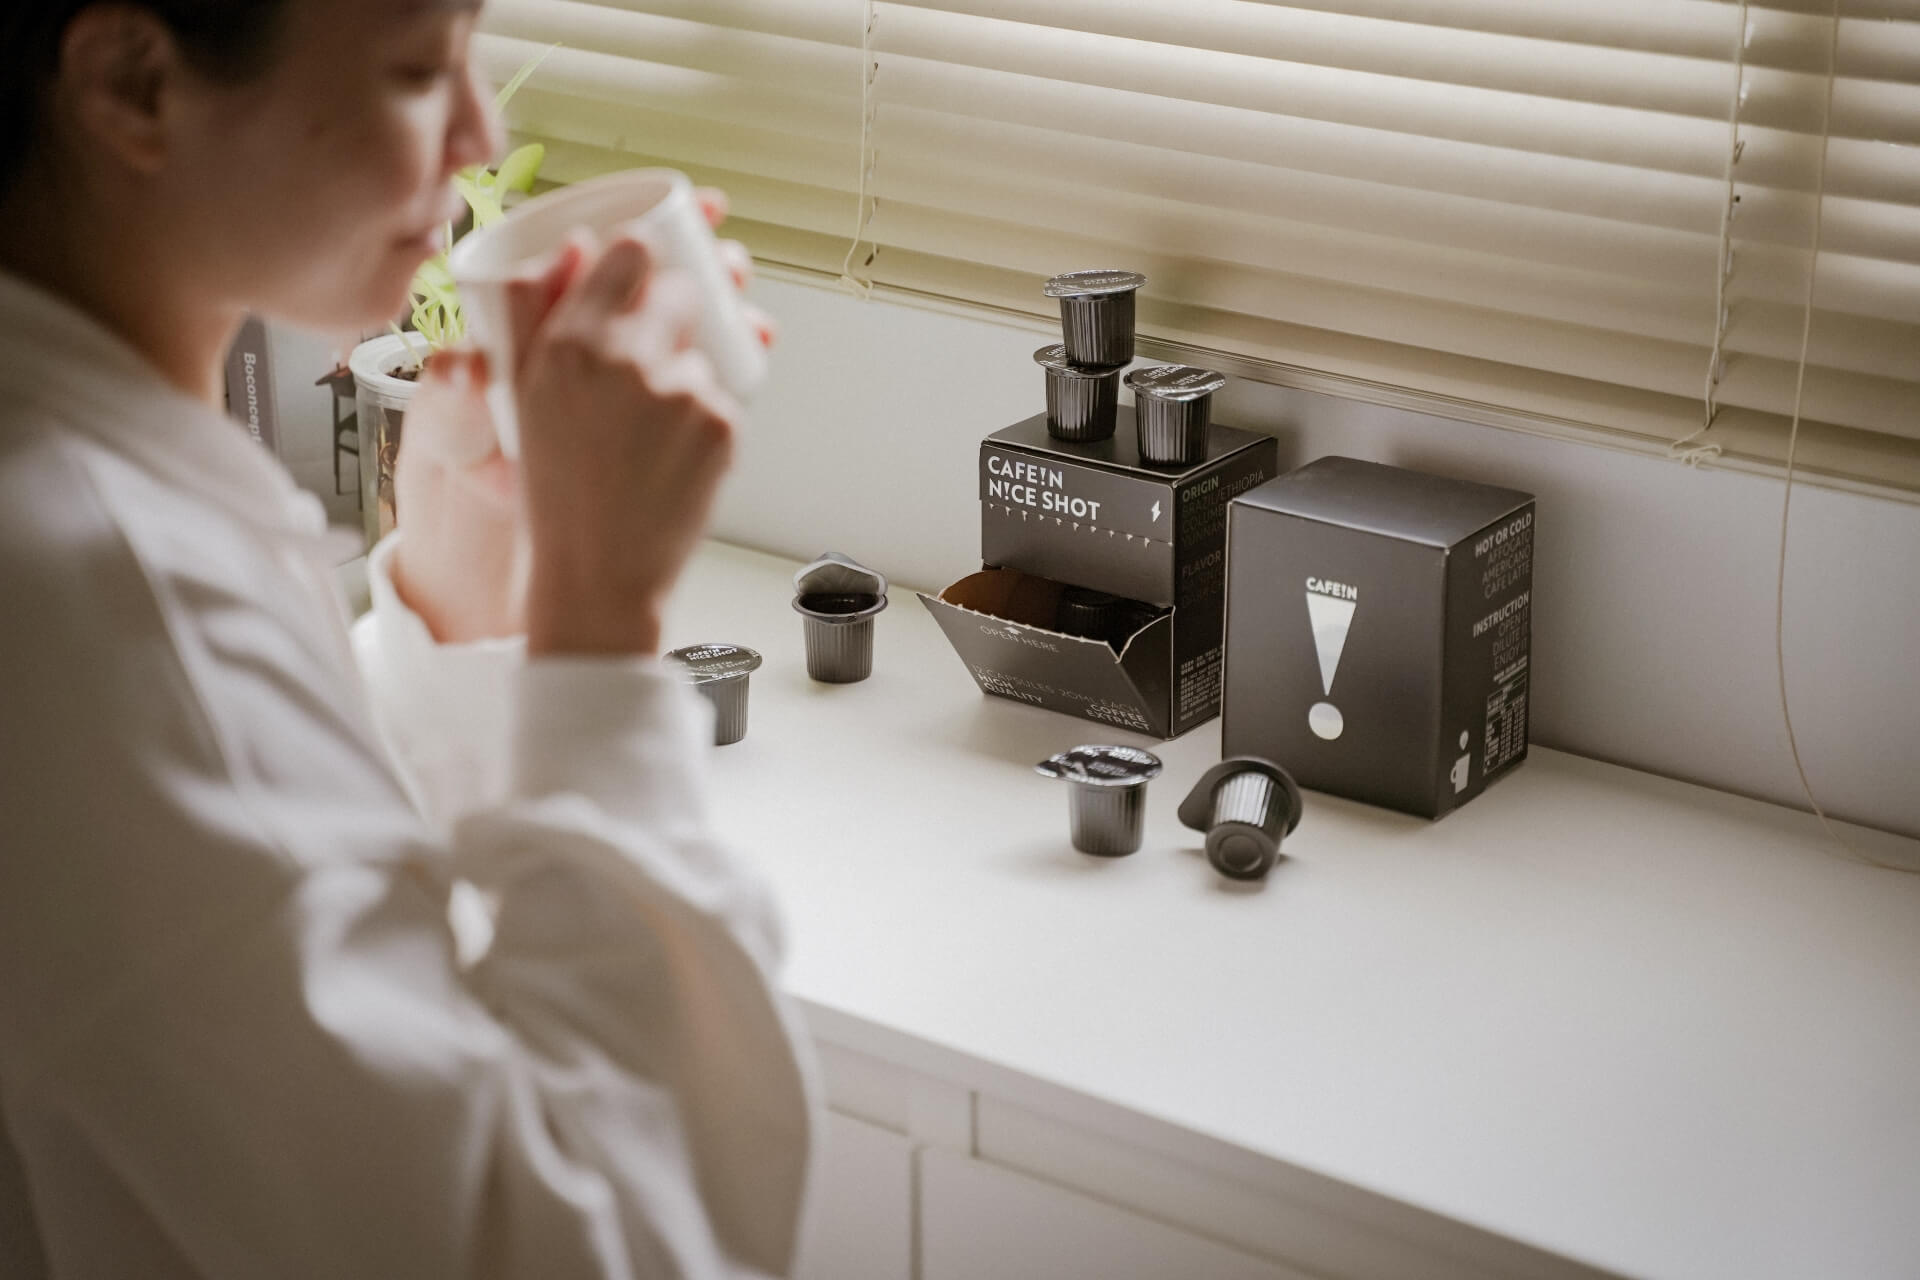 N!CE SHOT 極萃咖啡球以專利技術之高倍取工藝製作而成，非濃縮還原，無添加即溶咖啡粉，保留完整咖啡香氣，輕巧便於攜帶，重點是沖泡方法簡單又快速